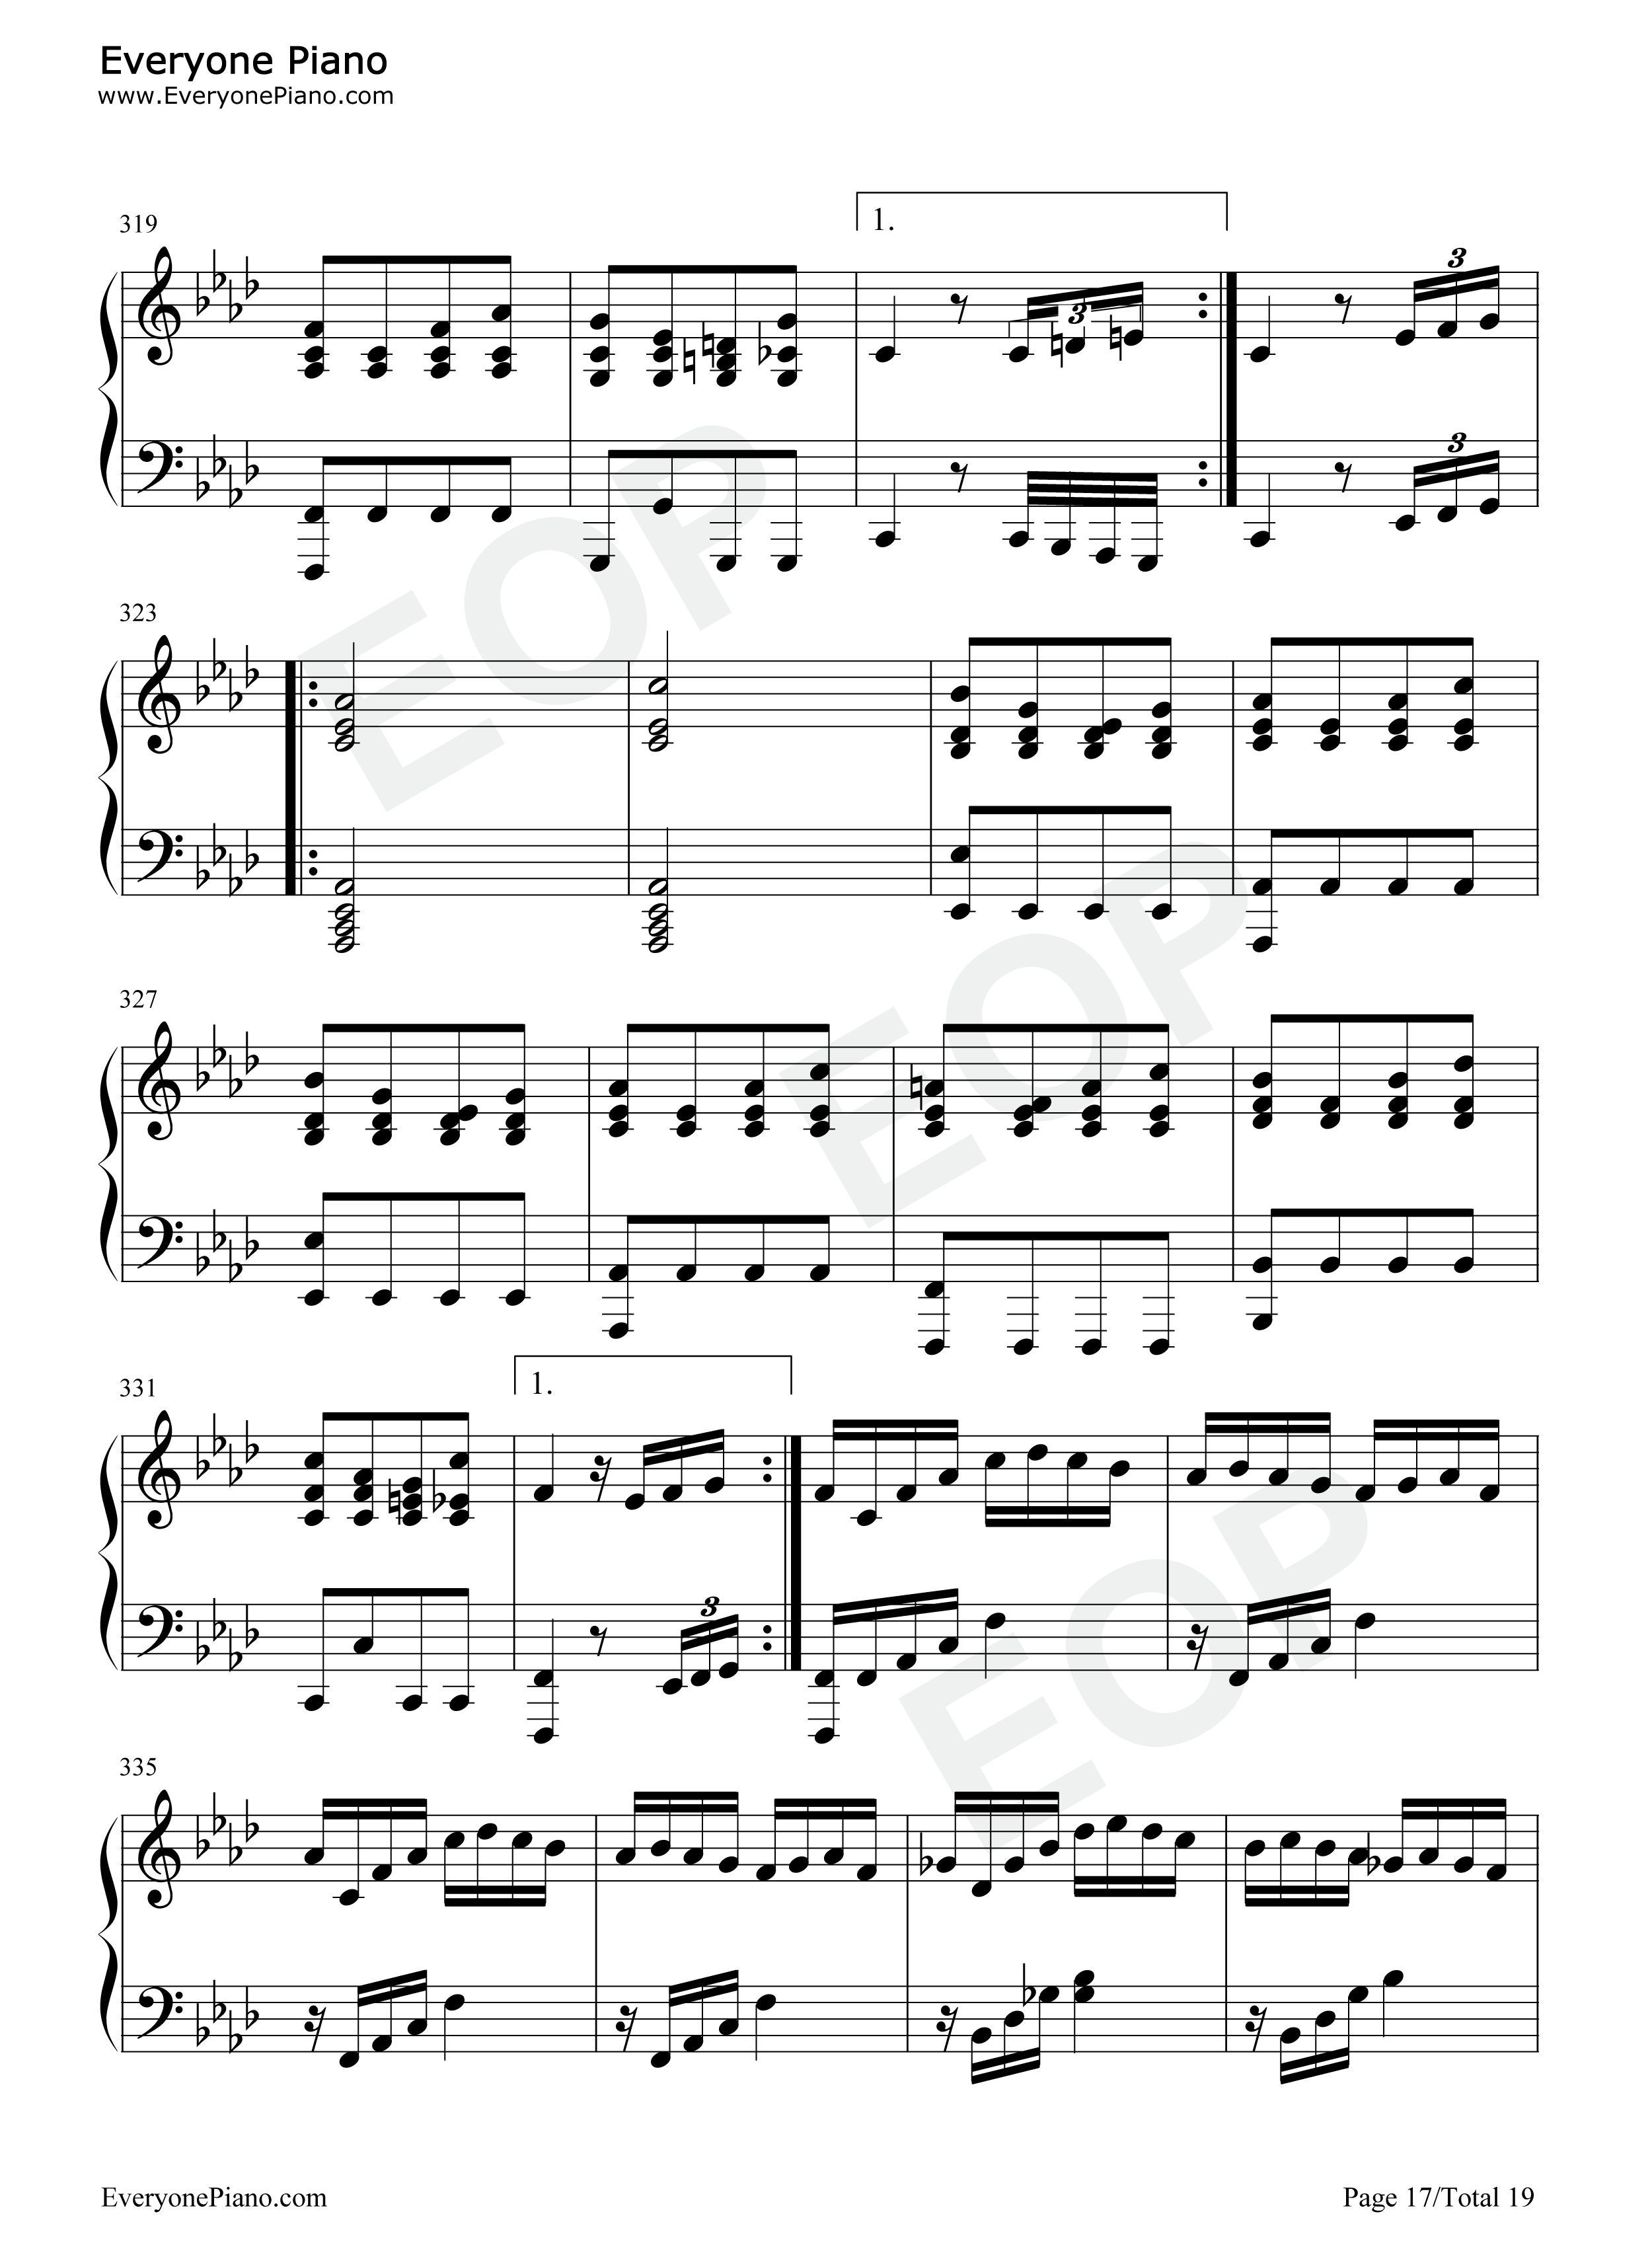 热情奏鸣曲第3乐章-第23钢琴奏鸣曲-贝多芬五线谱预览17